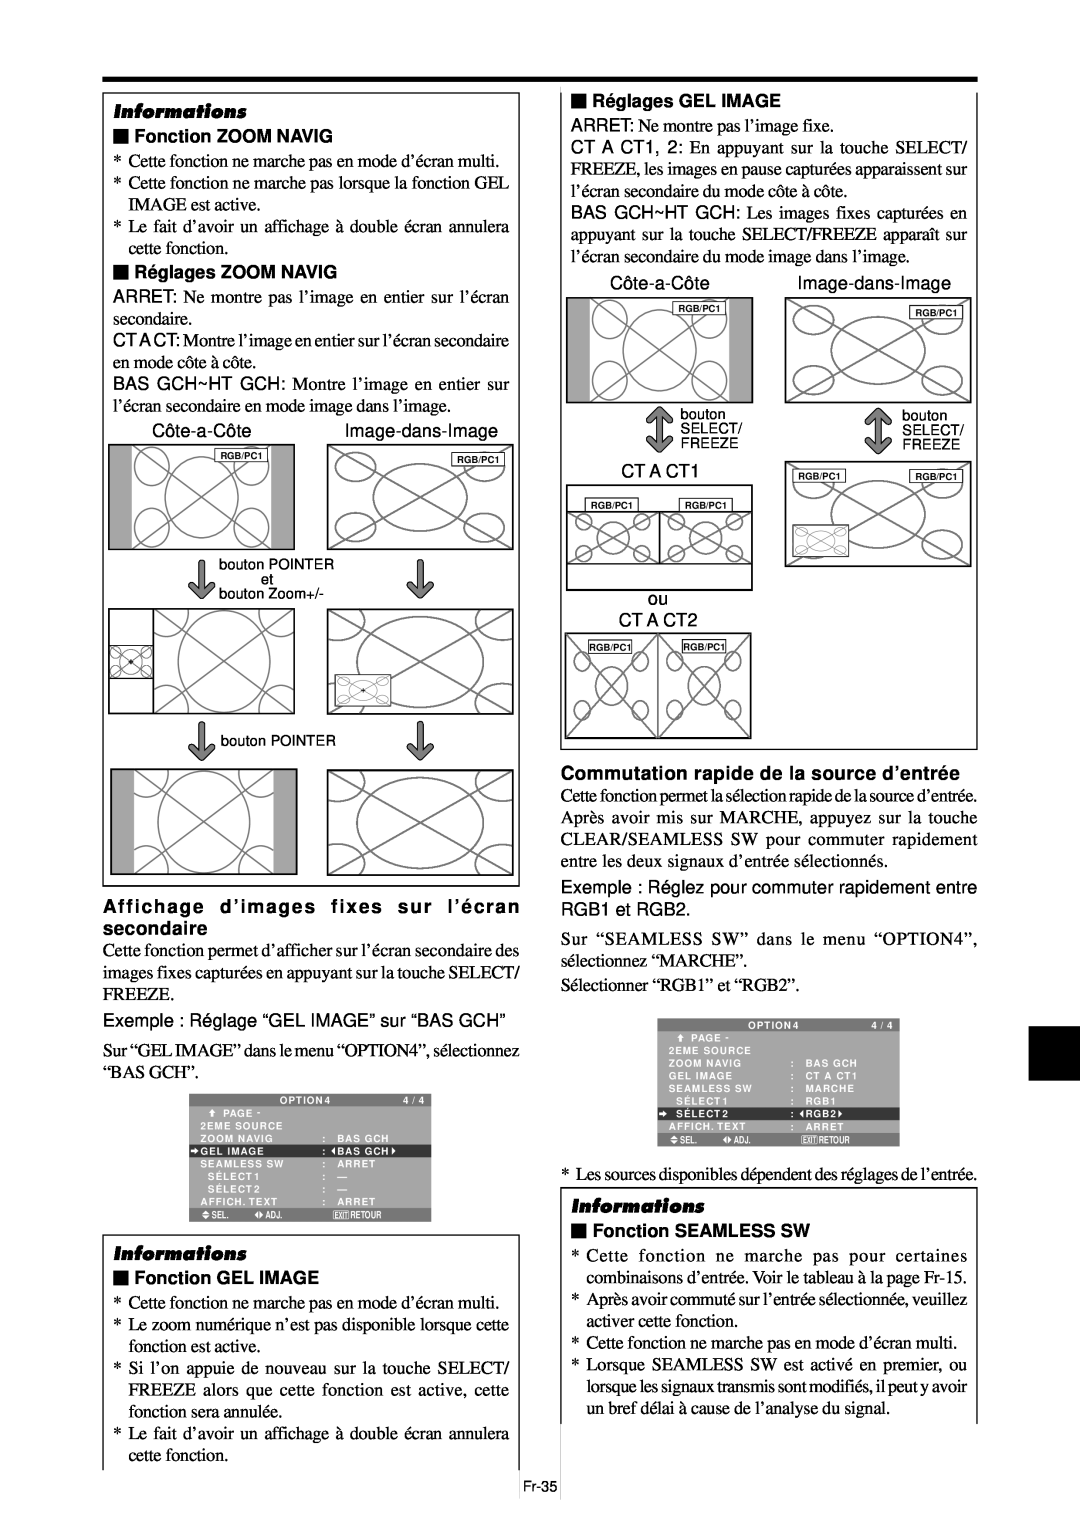 NEC PX-61XM4A Affichage d’images fixes sur l’é cran secondaire, Commutation rapide de la source d’entré e, Informations 